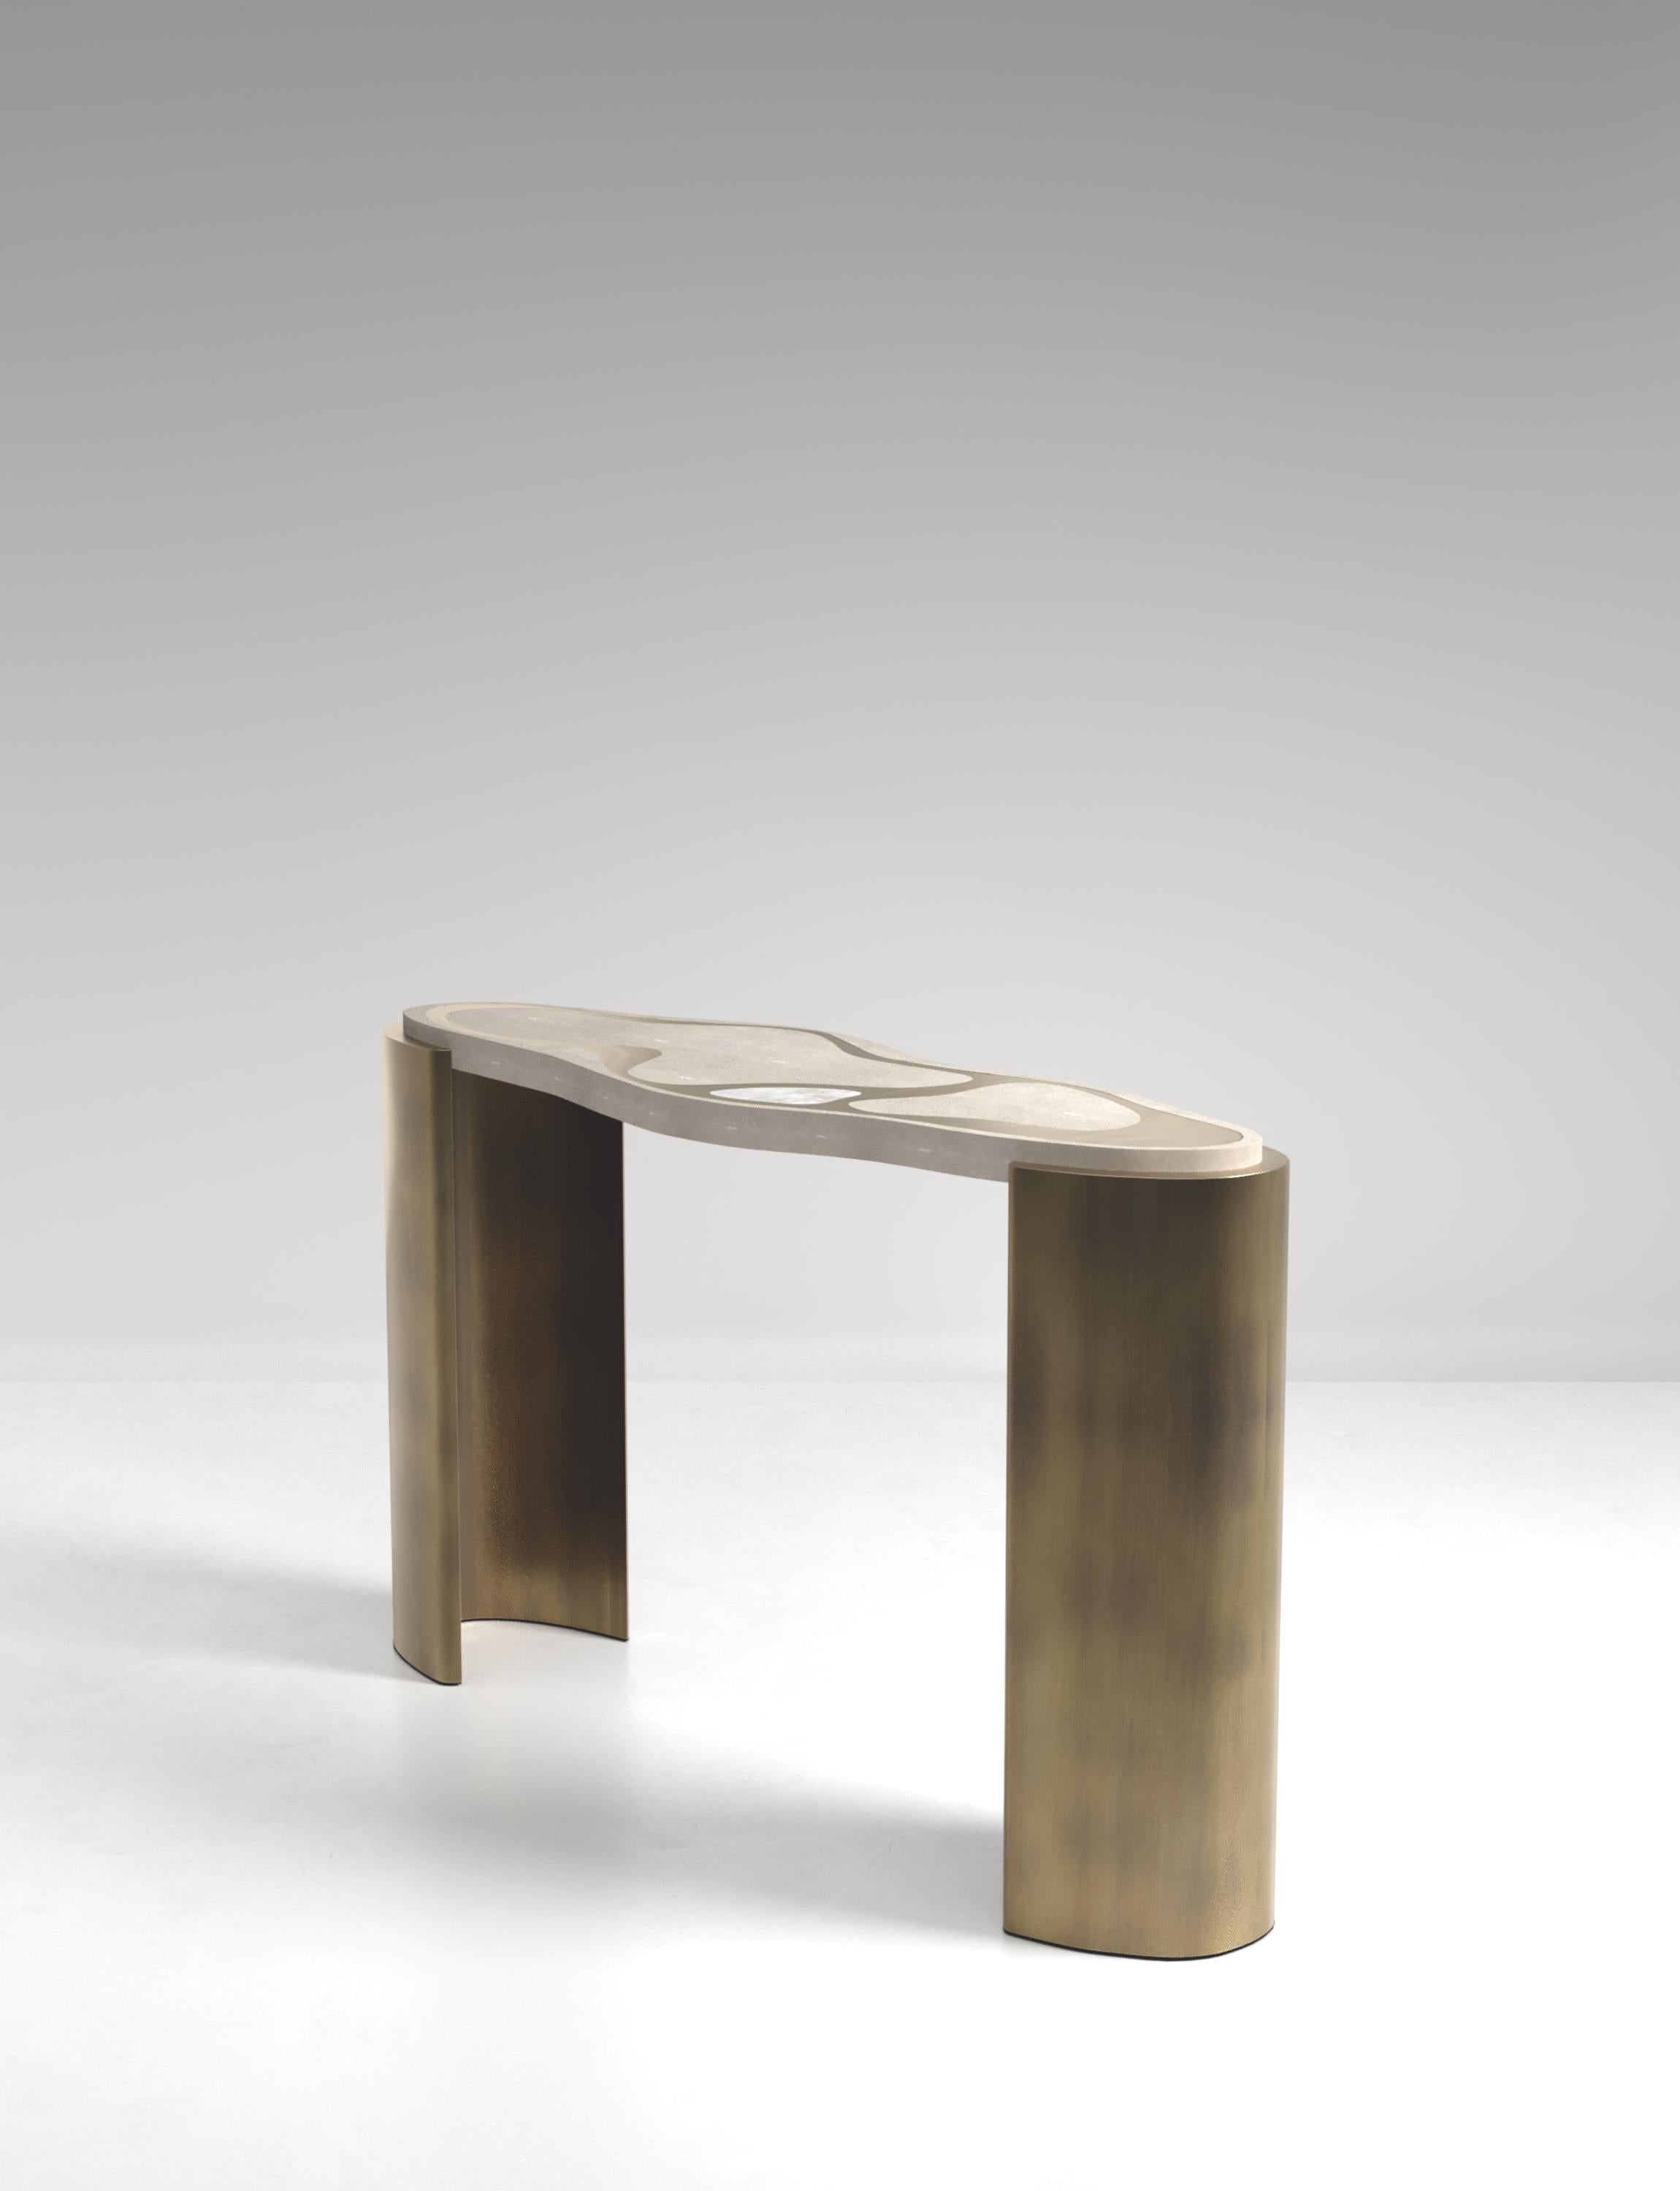 La table console Mask de Kifu Paris est une pièce polyvalente et organique. Le plateau et la base amorphes sont incrustés d'un mélange de galuchat crème, de quartz blanc et de laiton bronze-patine. Cette pièce a été conçue par Kifu Augousti, la